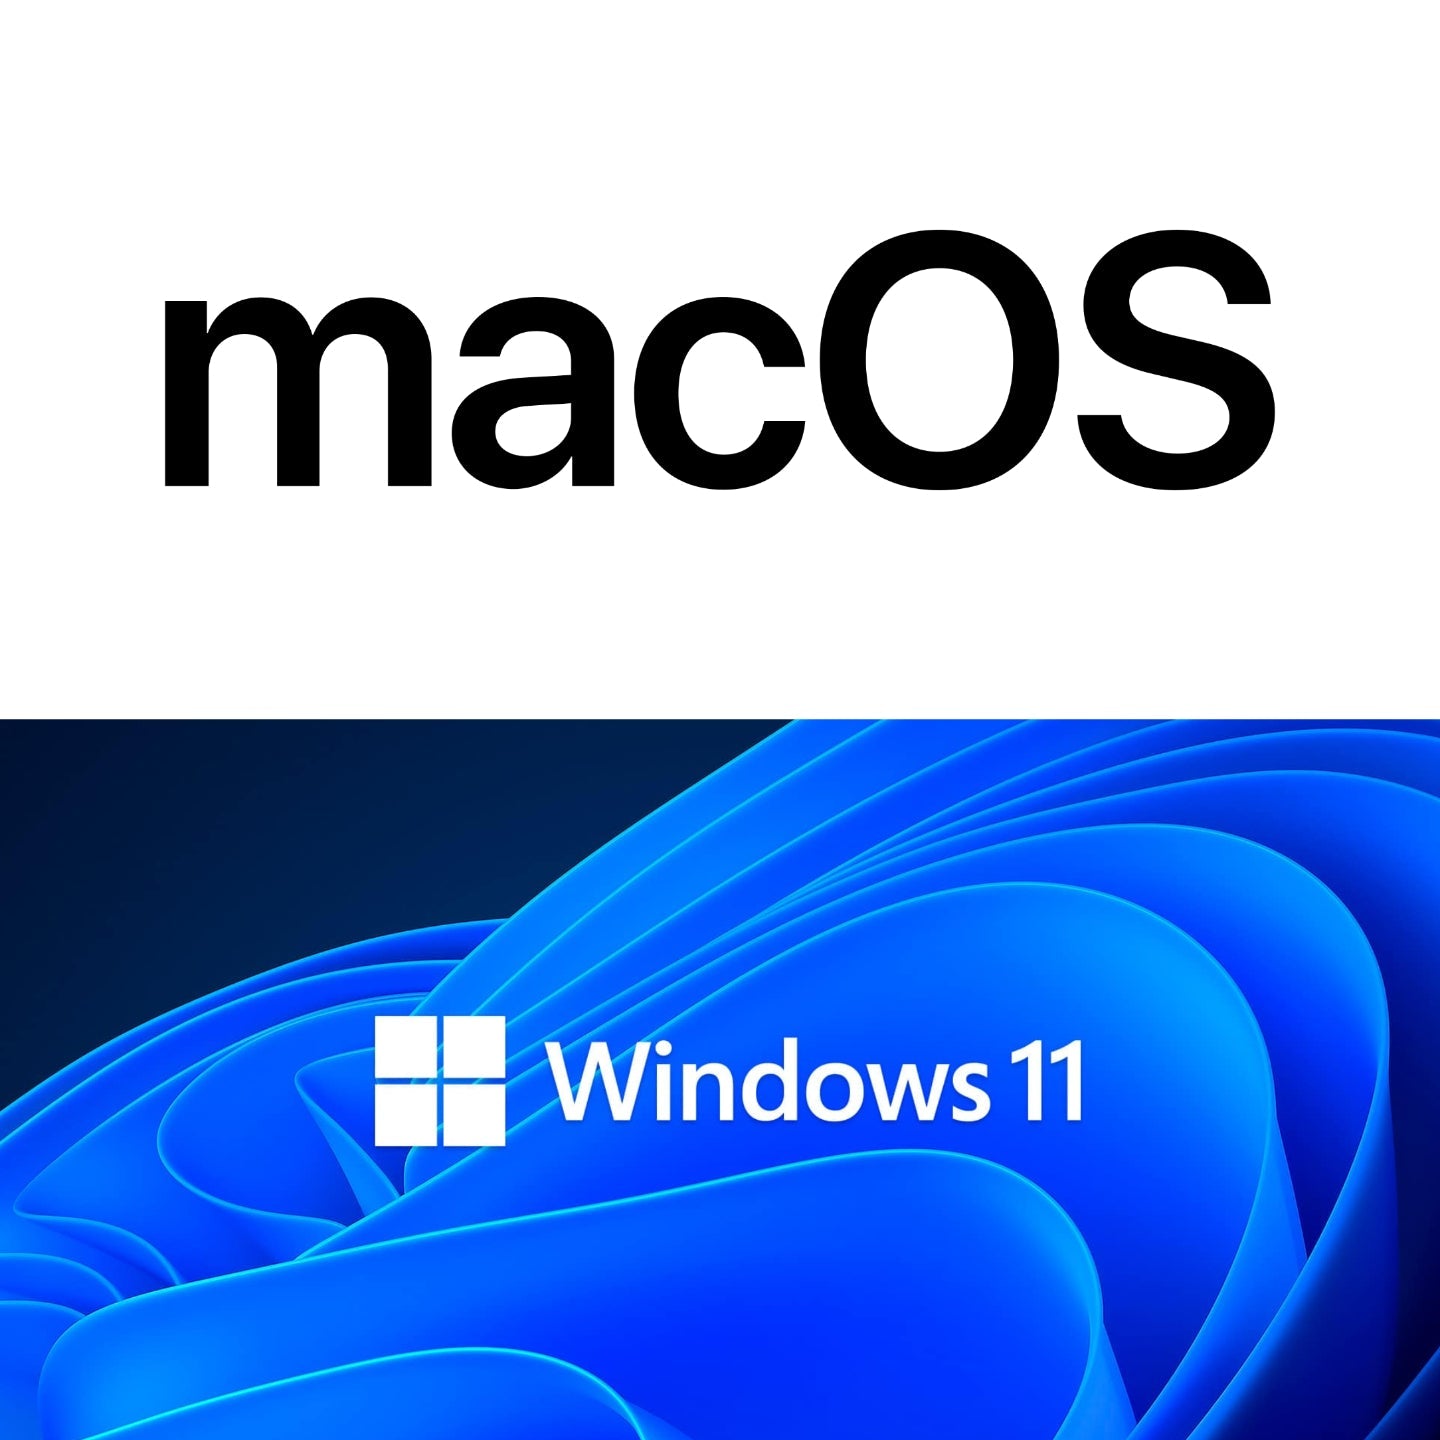 Best Excel: Mac Vs Windows - The Programs Comparison